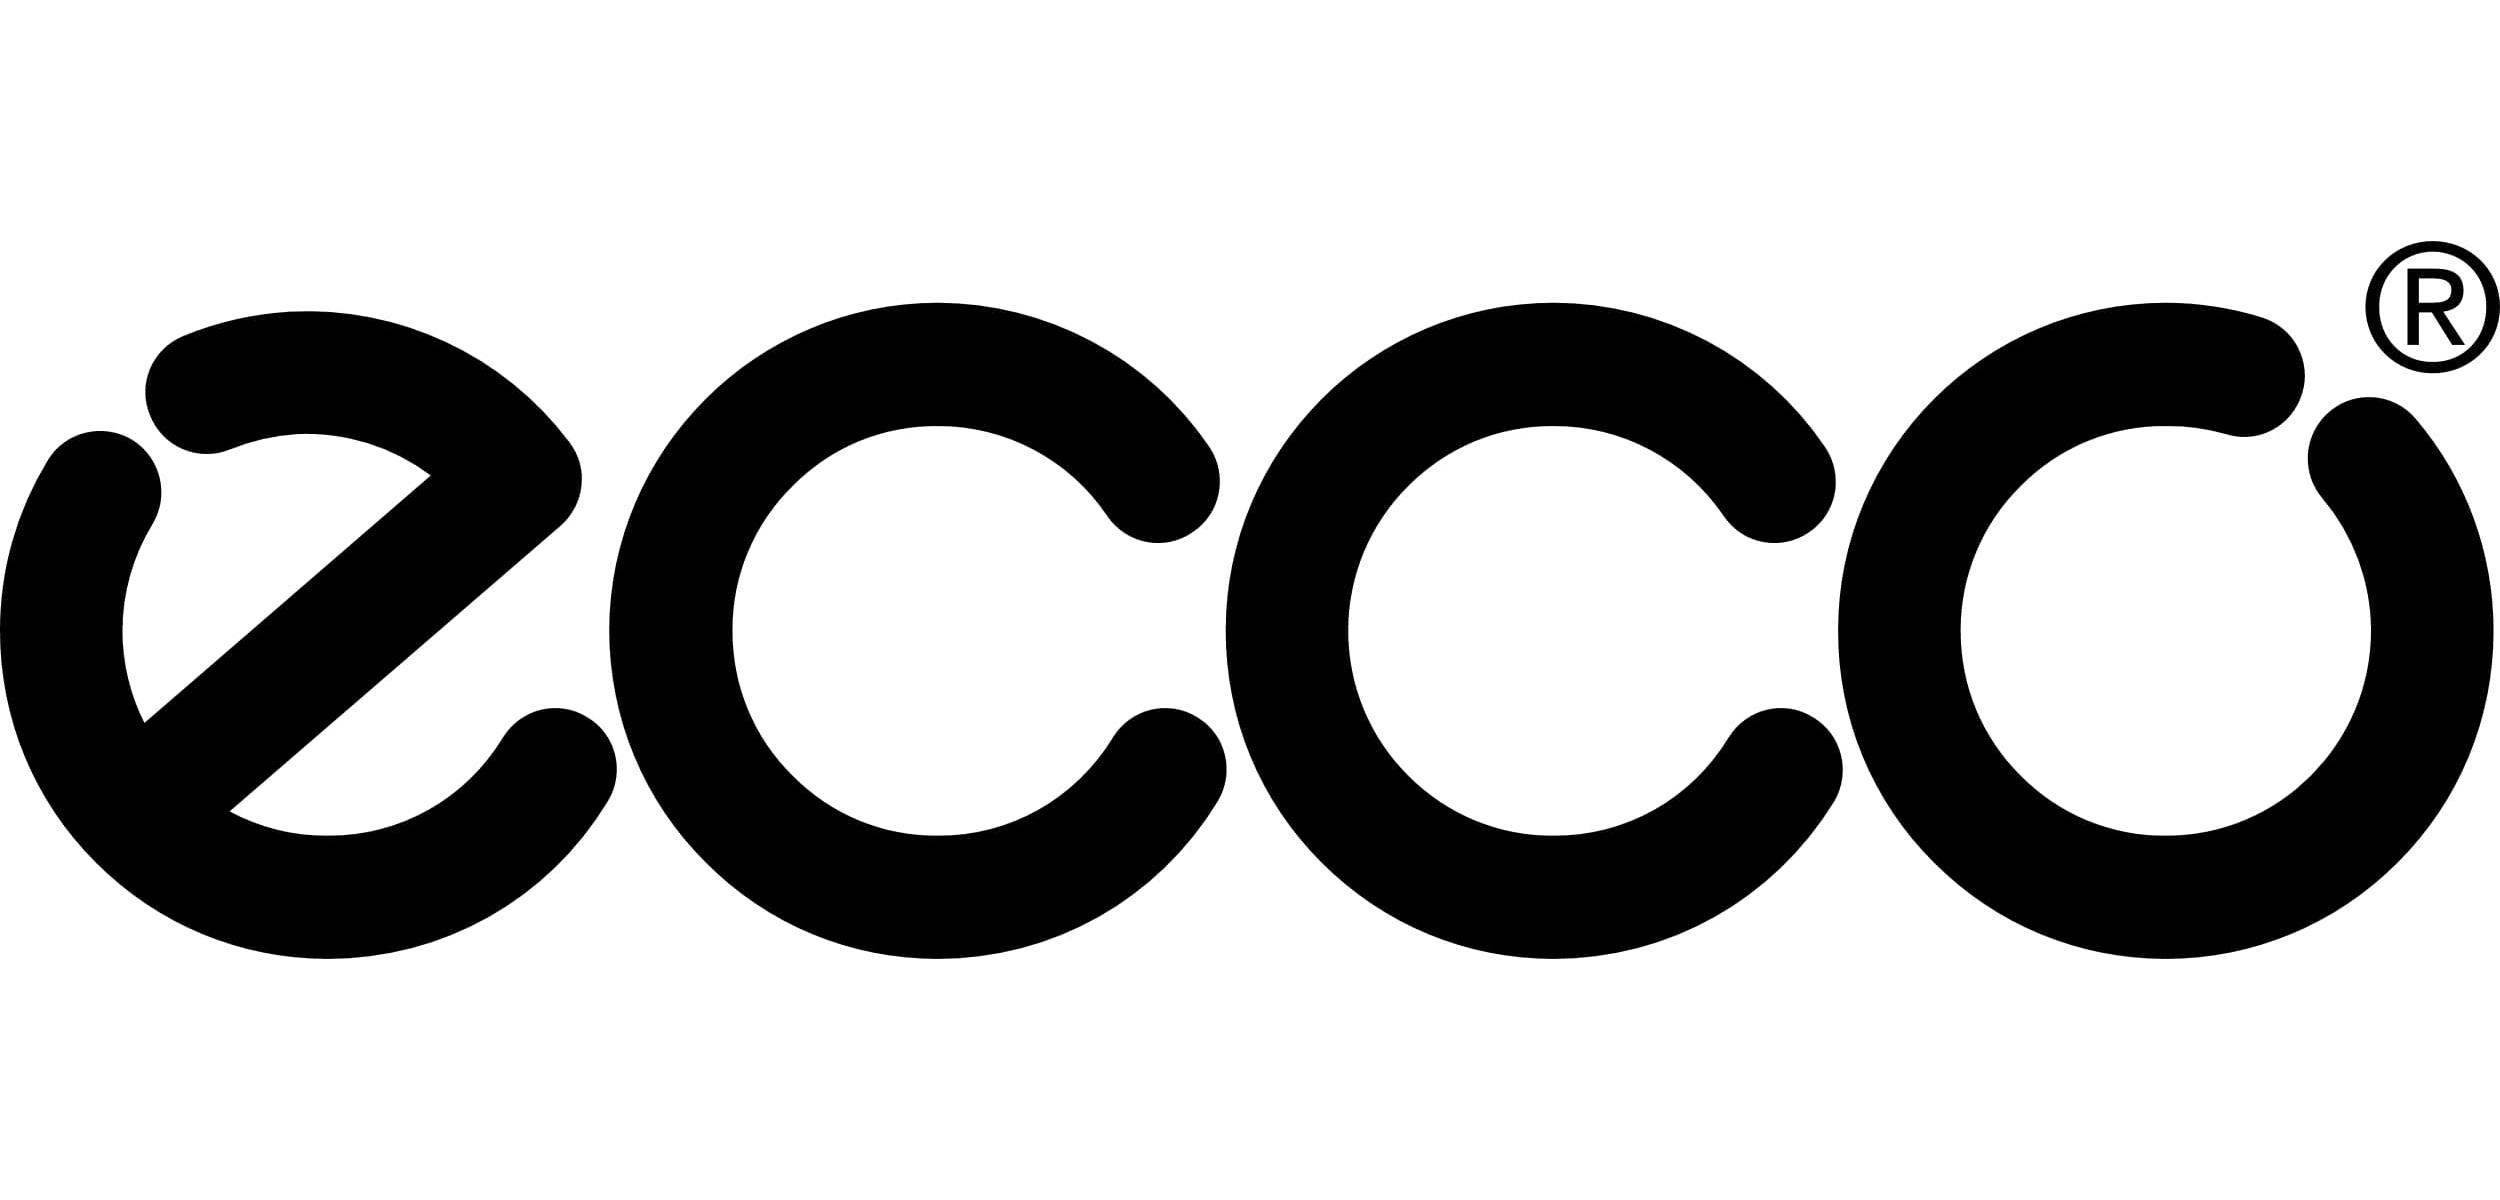 Logo of Ecco